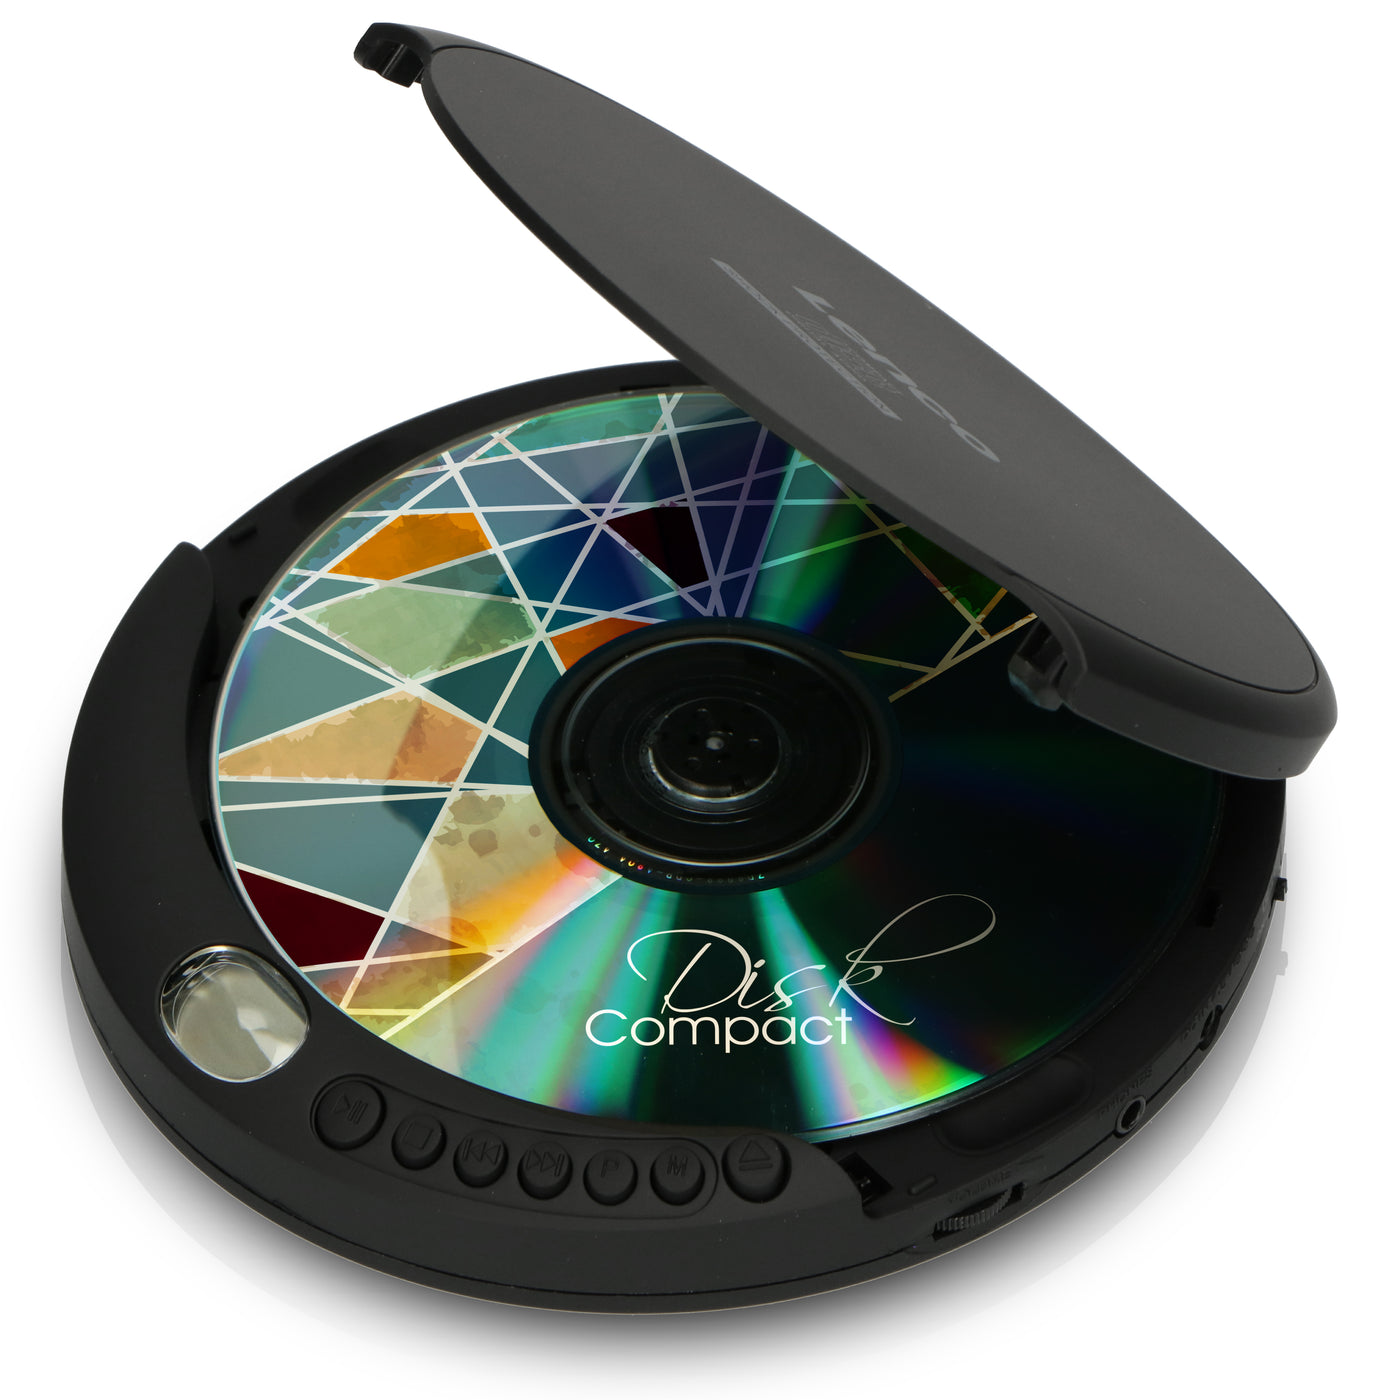 Lenco CD-200 - Lecteur CD portable avec protection contre les chocs - Noir